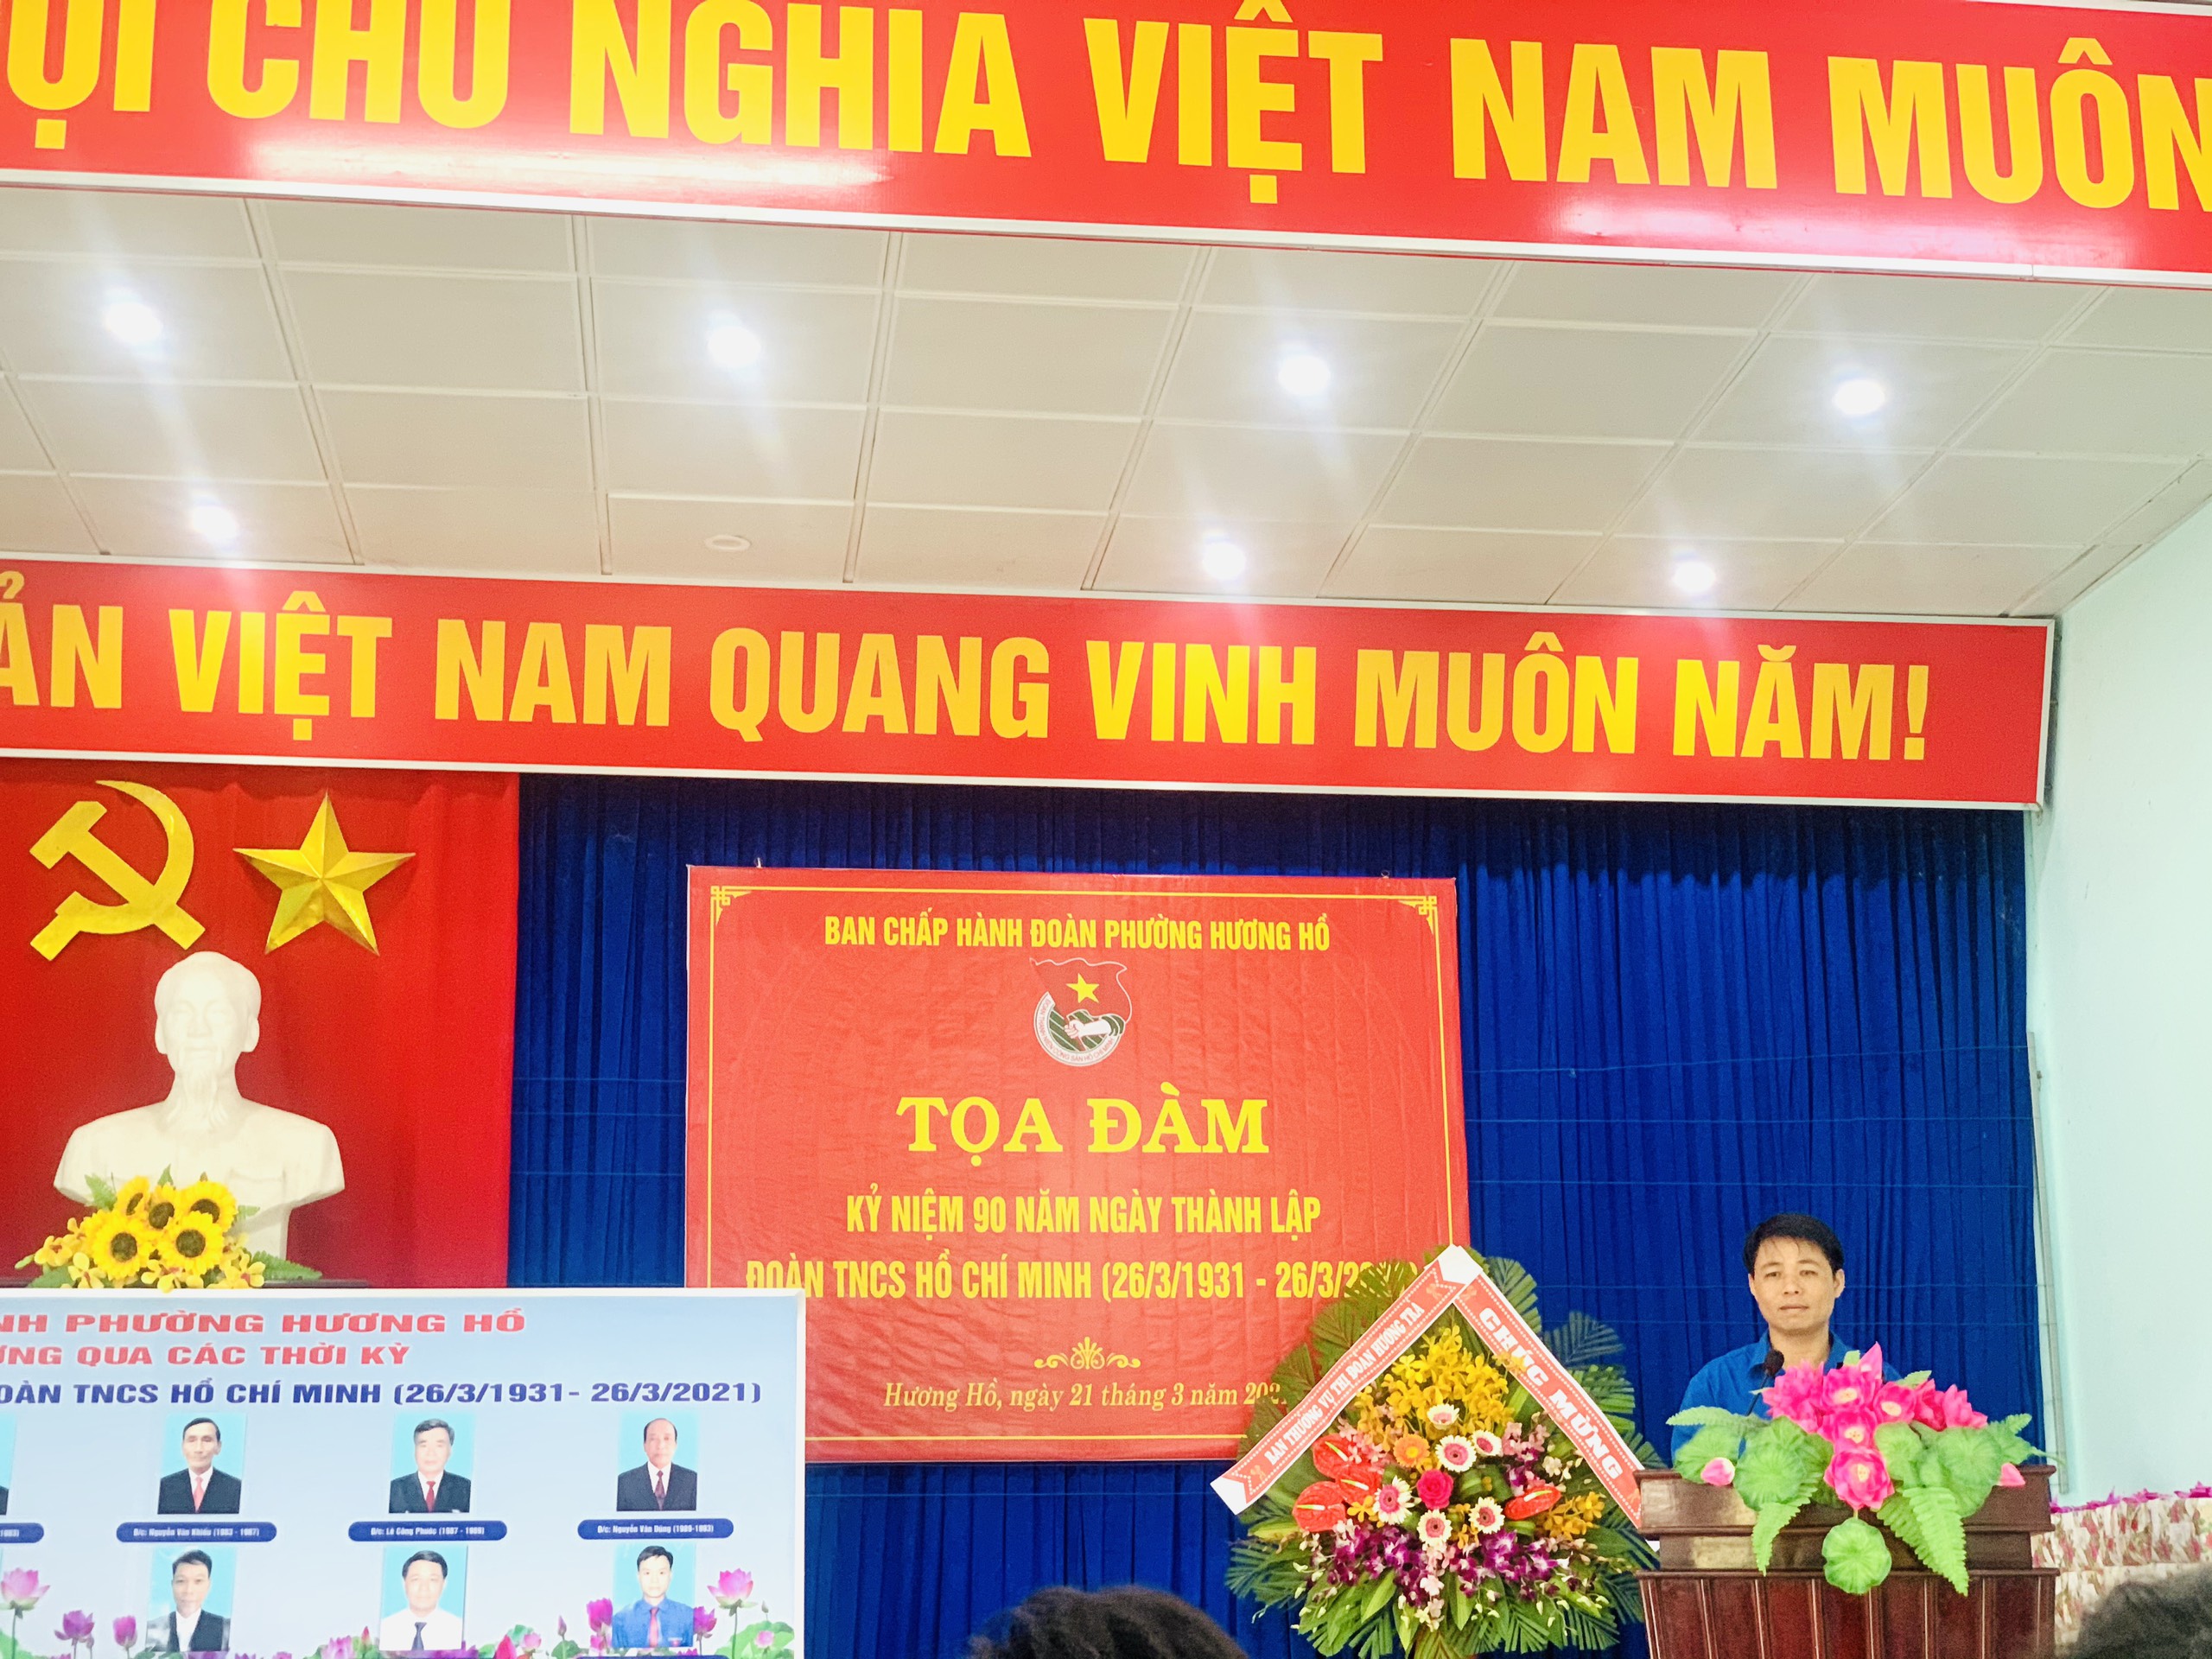 Đ/c Lâm Văn Long - Phó Bí thư Thường trưcj Đảng uỷ phát biểu chúc mừng